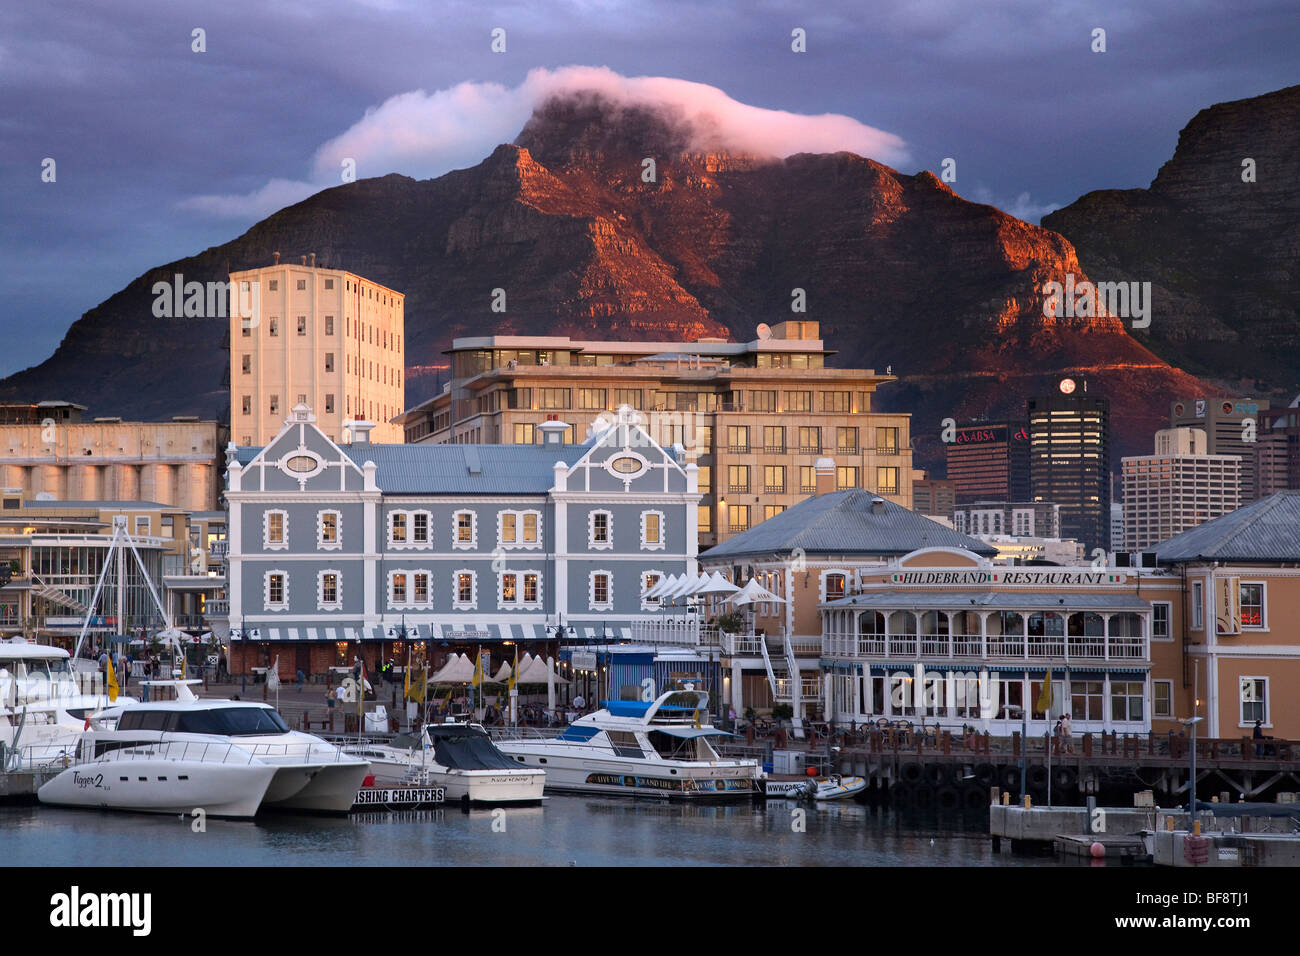 Nuage plane sur la Montagne de la table au coucher du soleil, le Victoria and Alfred Waterfront, Cape Town, Afrique du Sud Banque D'Images